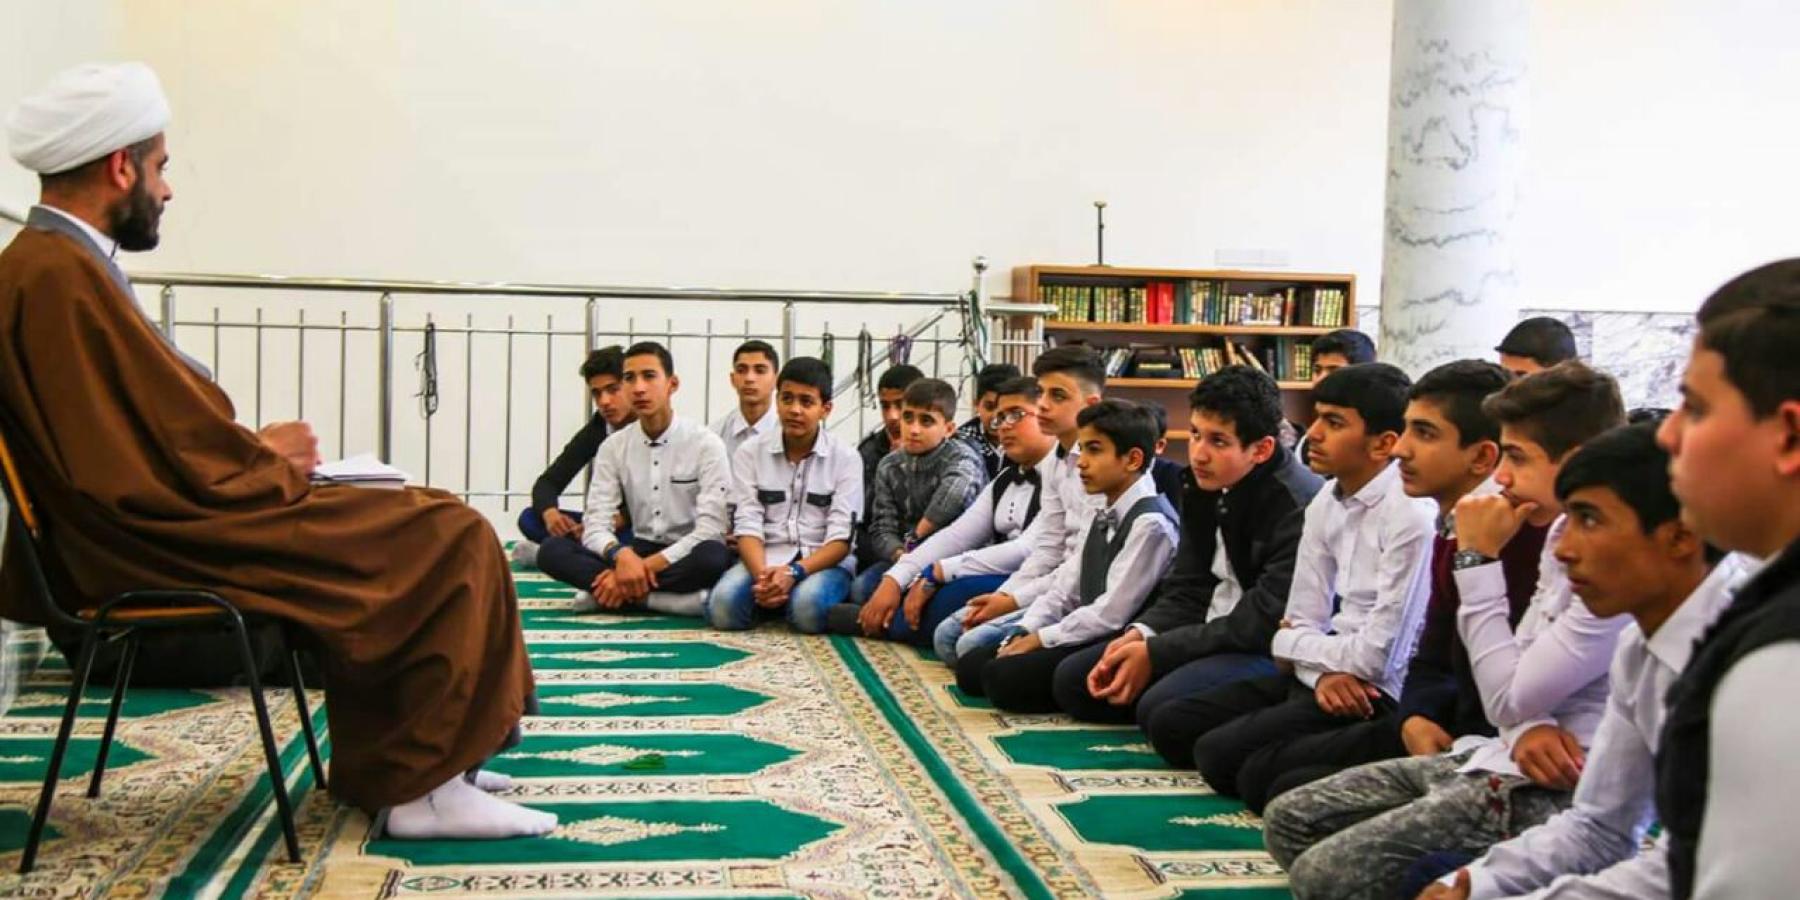 قسم الشؤون الدينية يستقبل كادر وطلبة عدد من المدارس الثانوية في محافظة النجف